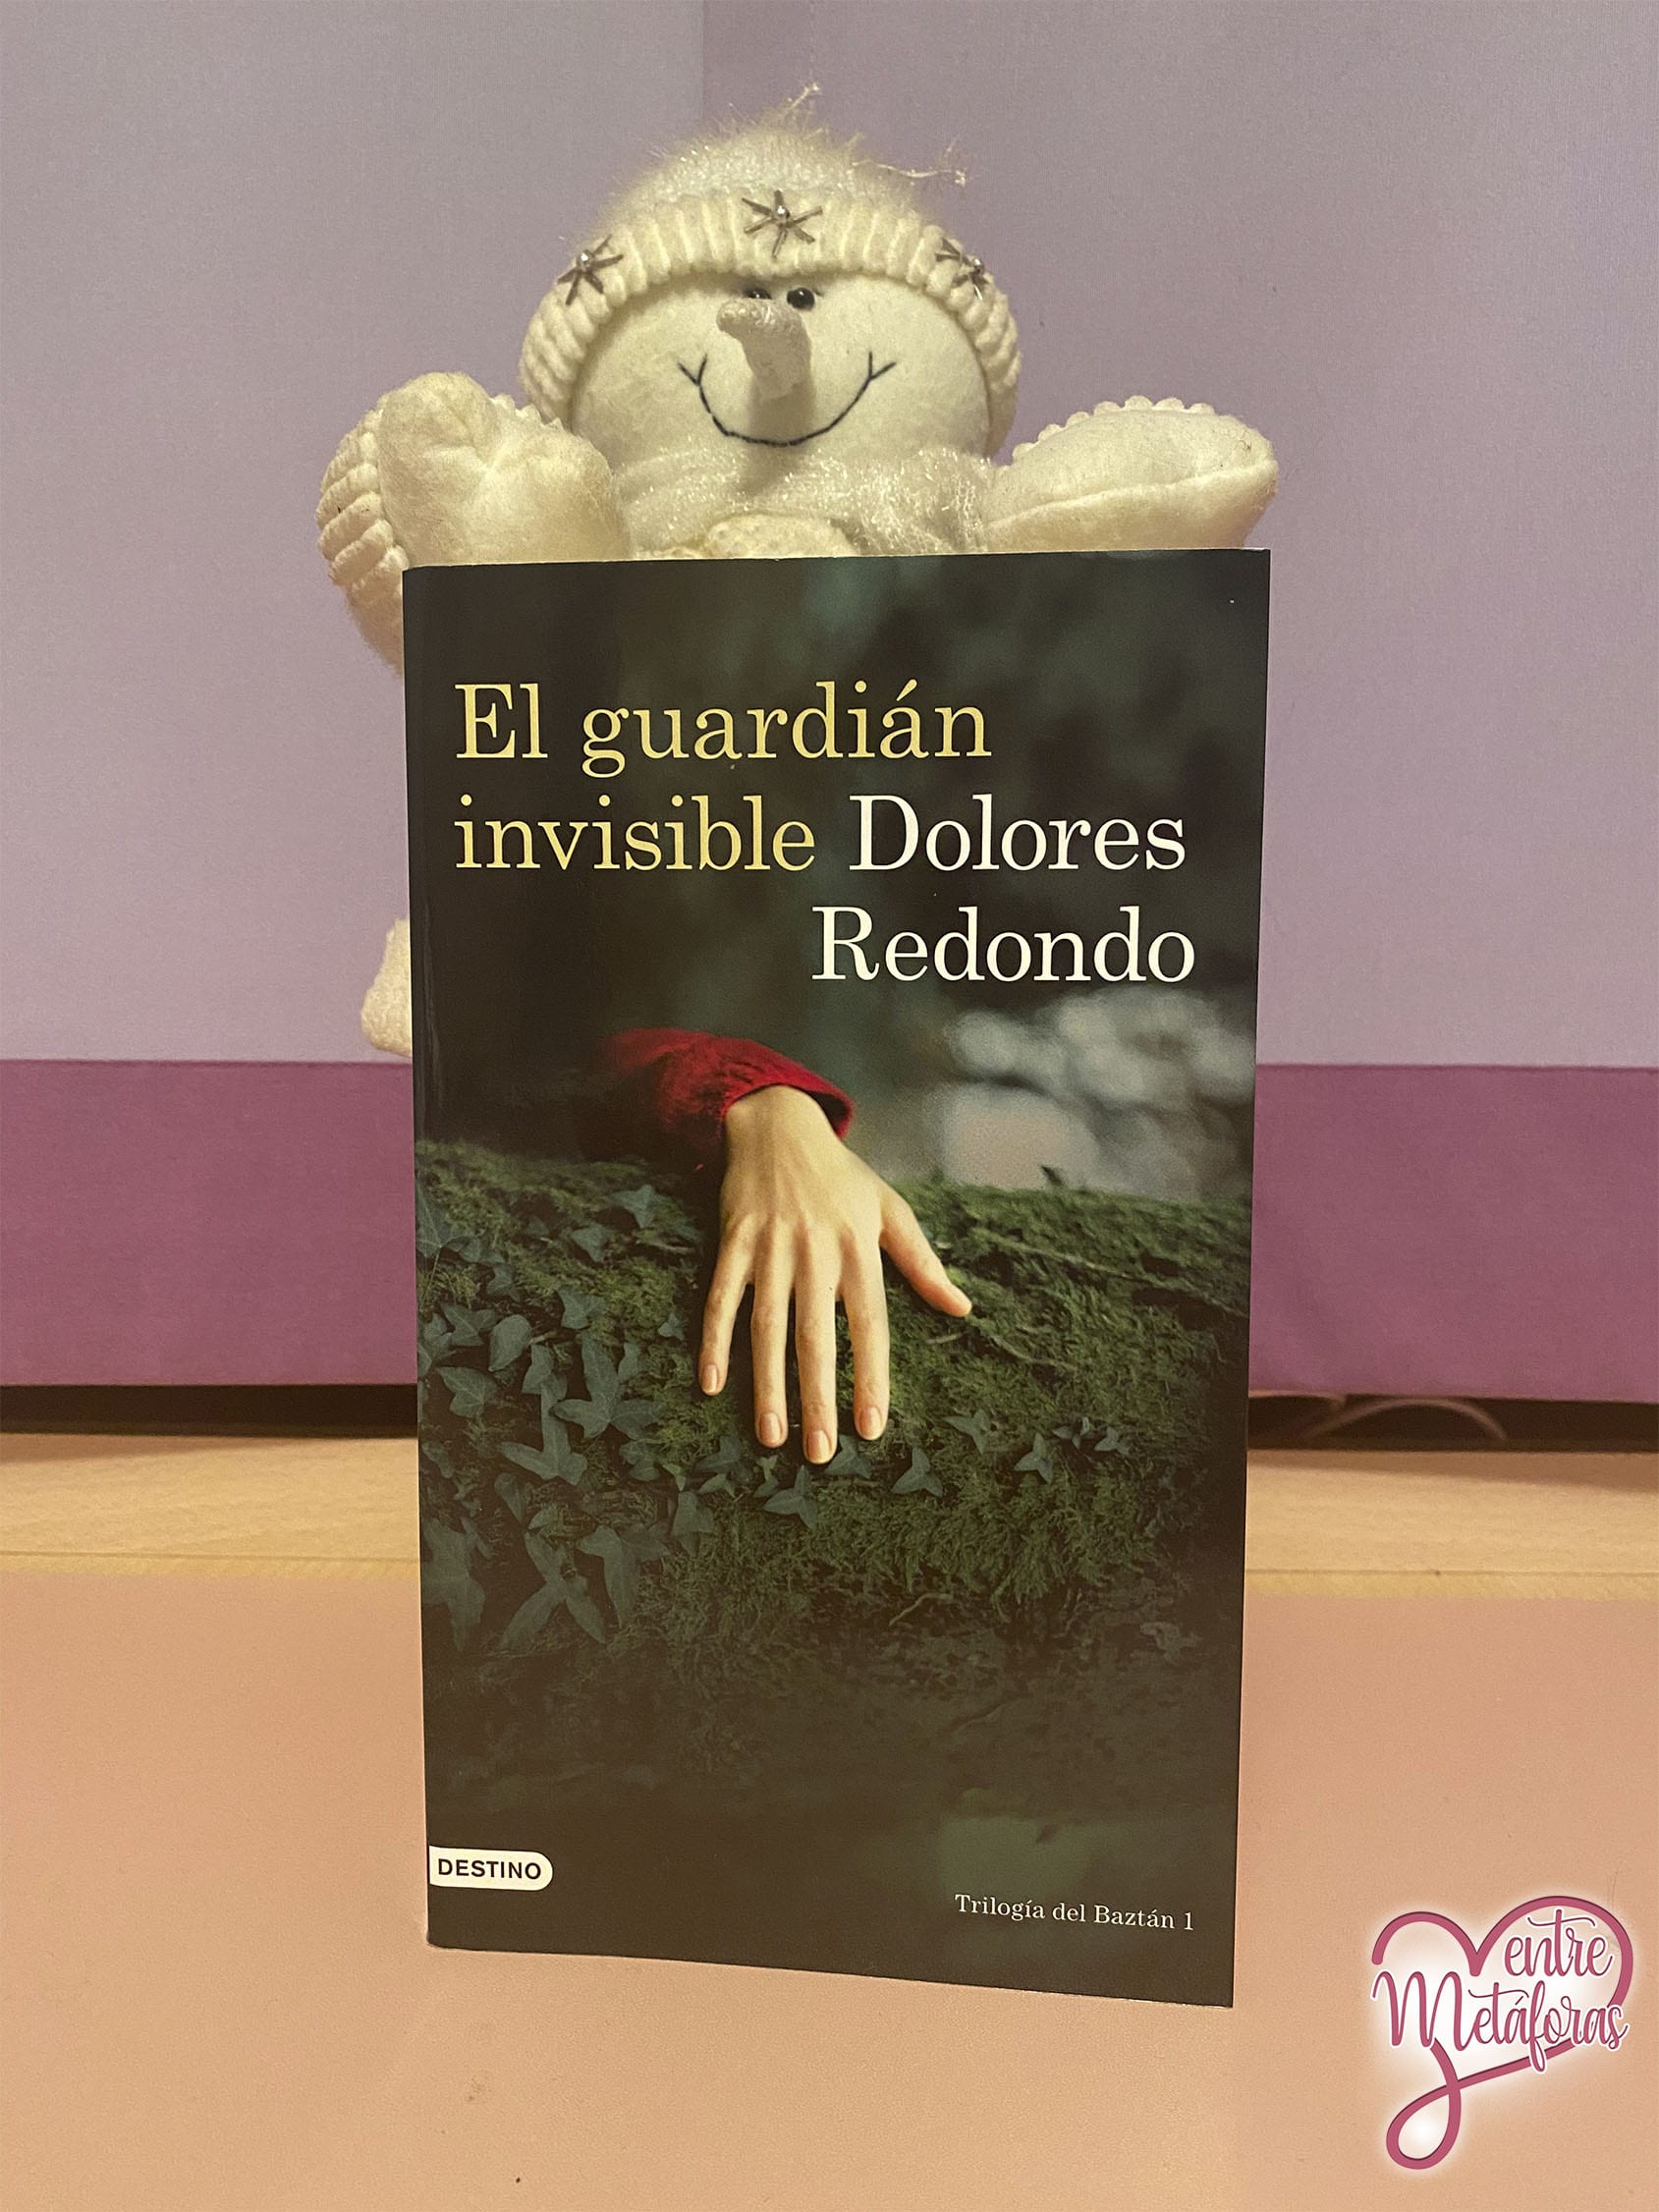 Reseña de 'El guardián invisible', de Dolores Redondo (Trilogía del Baztán)  